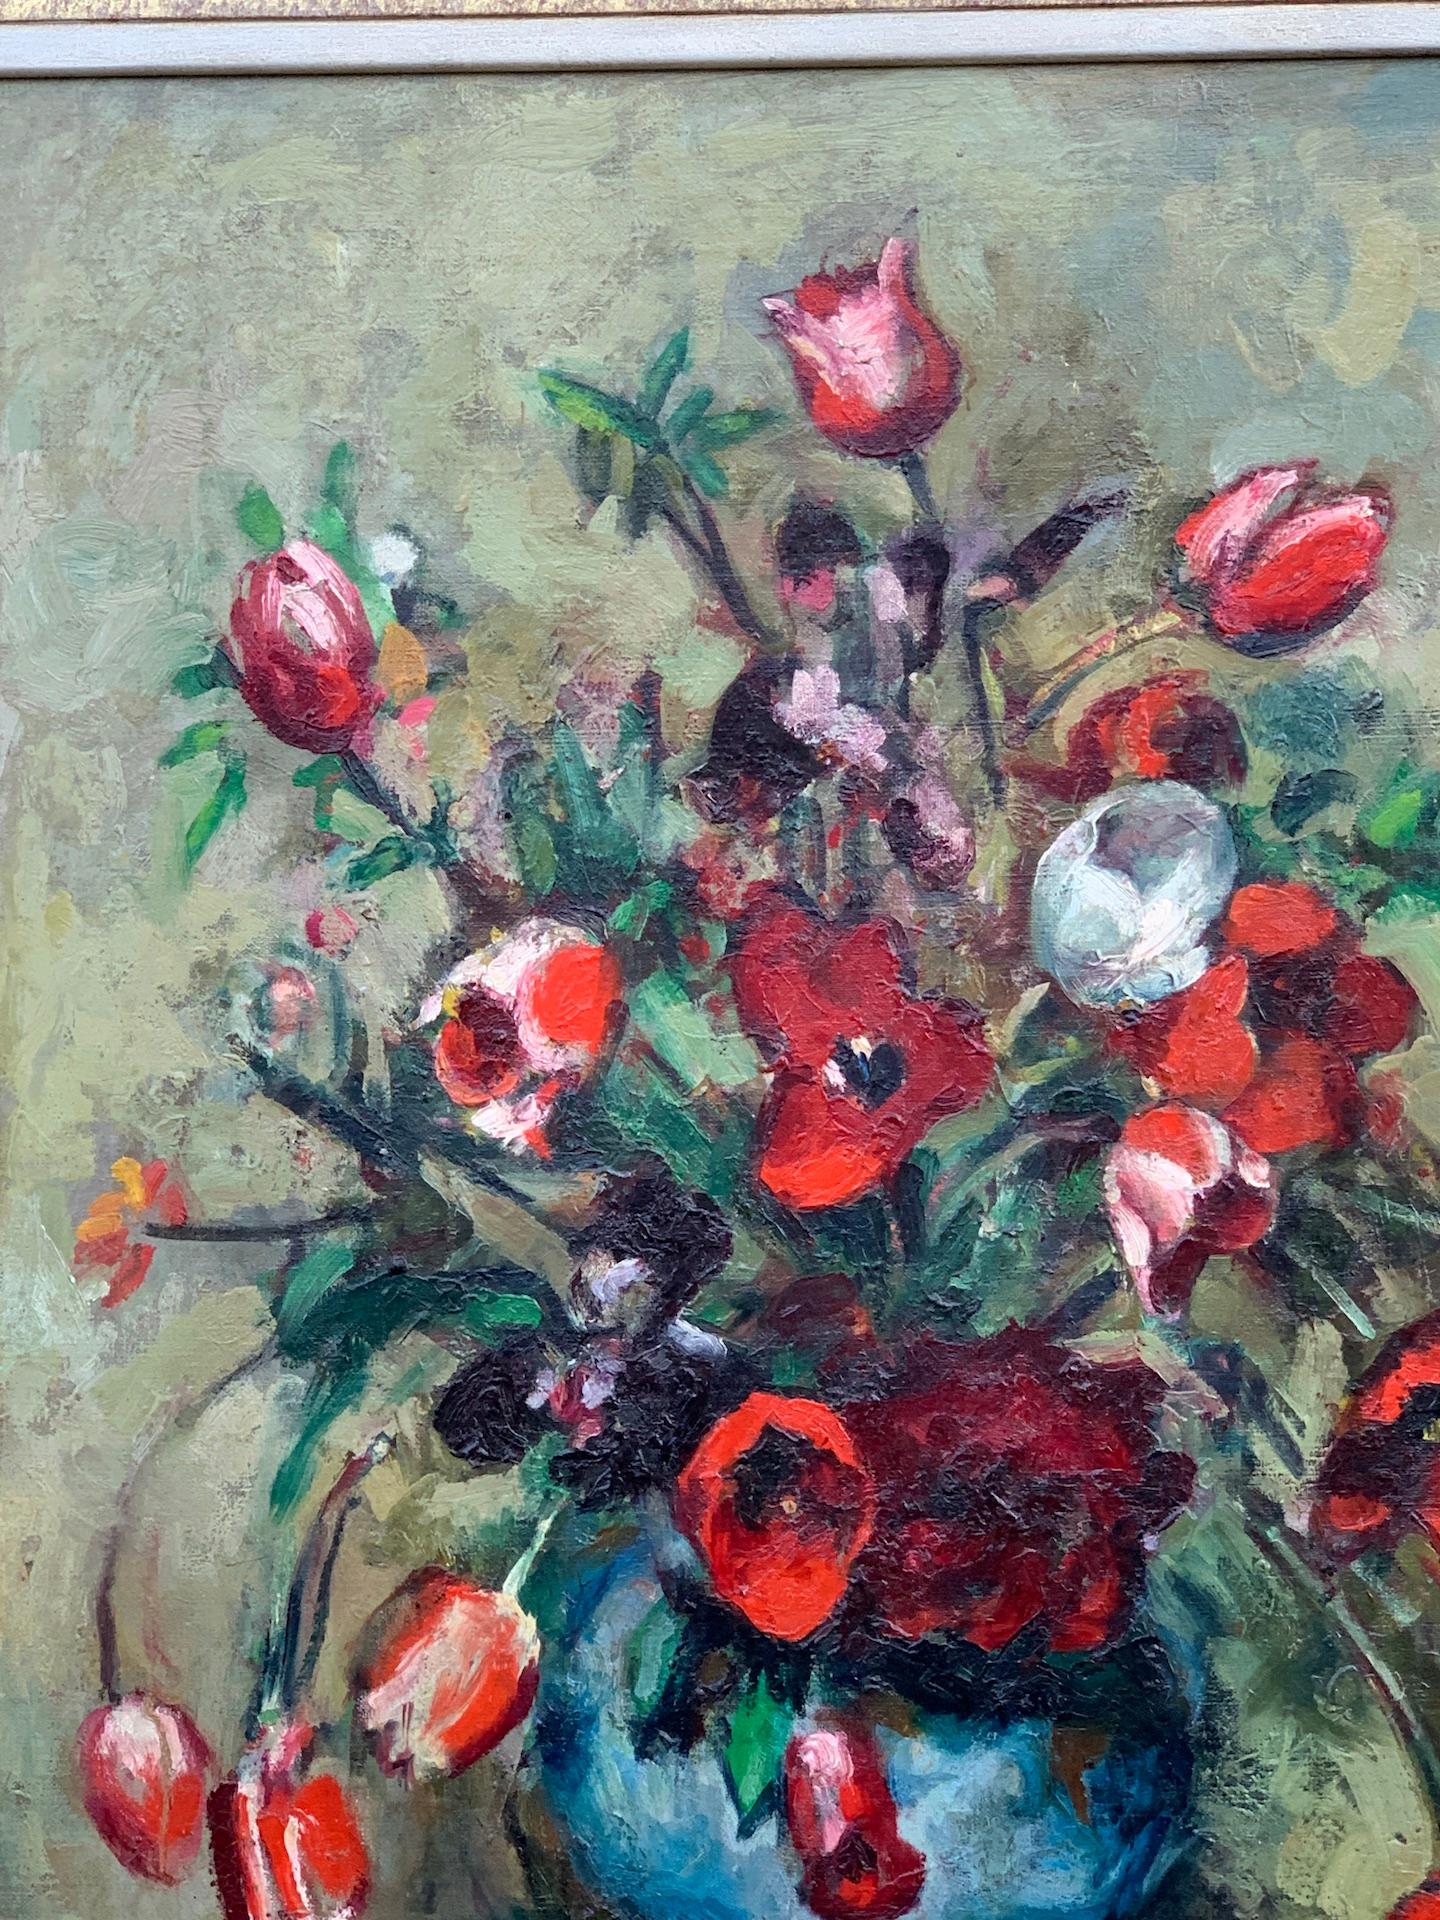 Englisches Stillleben aus den 1930er Jahren mit Tulpen und anderen roten Blumen in einer Vase  – Painting von M.Mathers